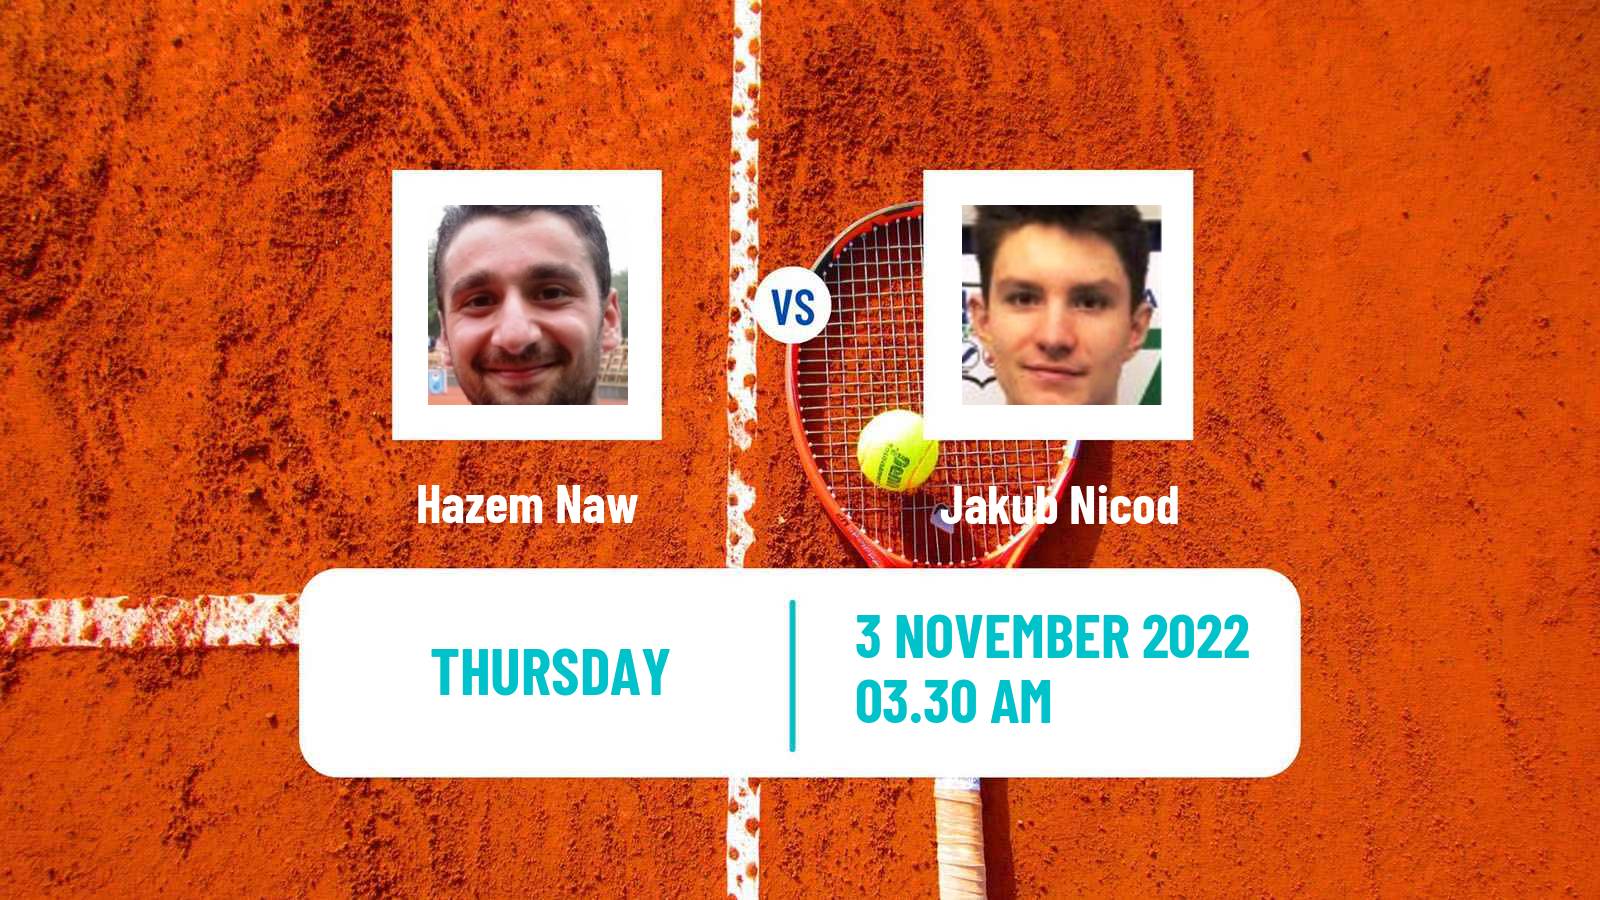 Tennis ITF Tournaments Hazem Naw - Jakub Nicod